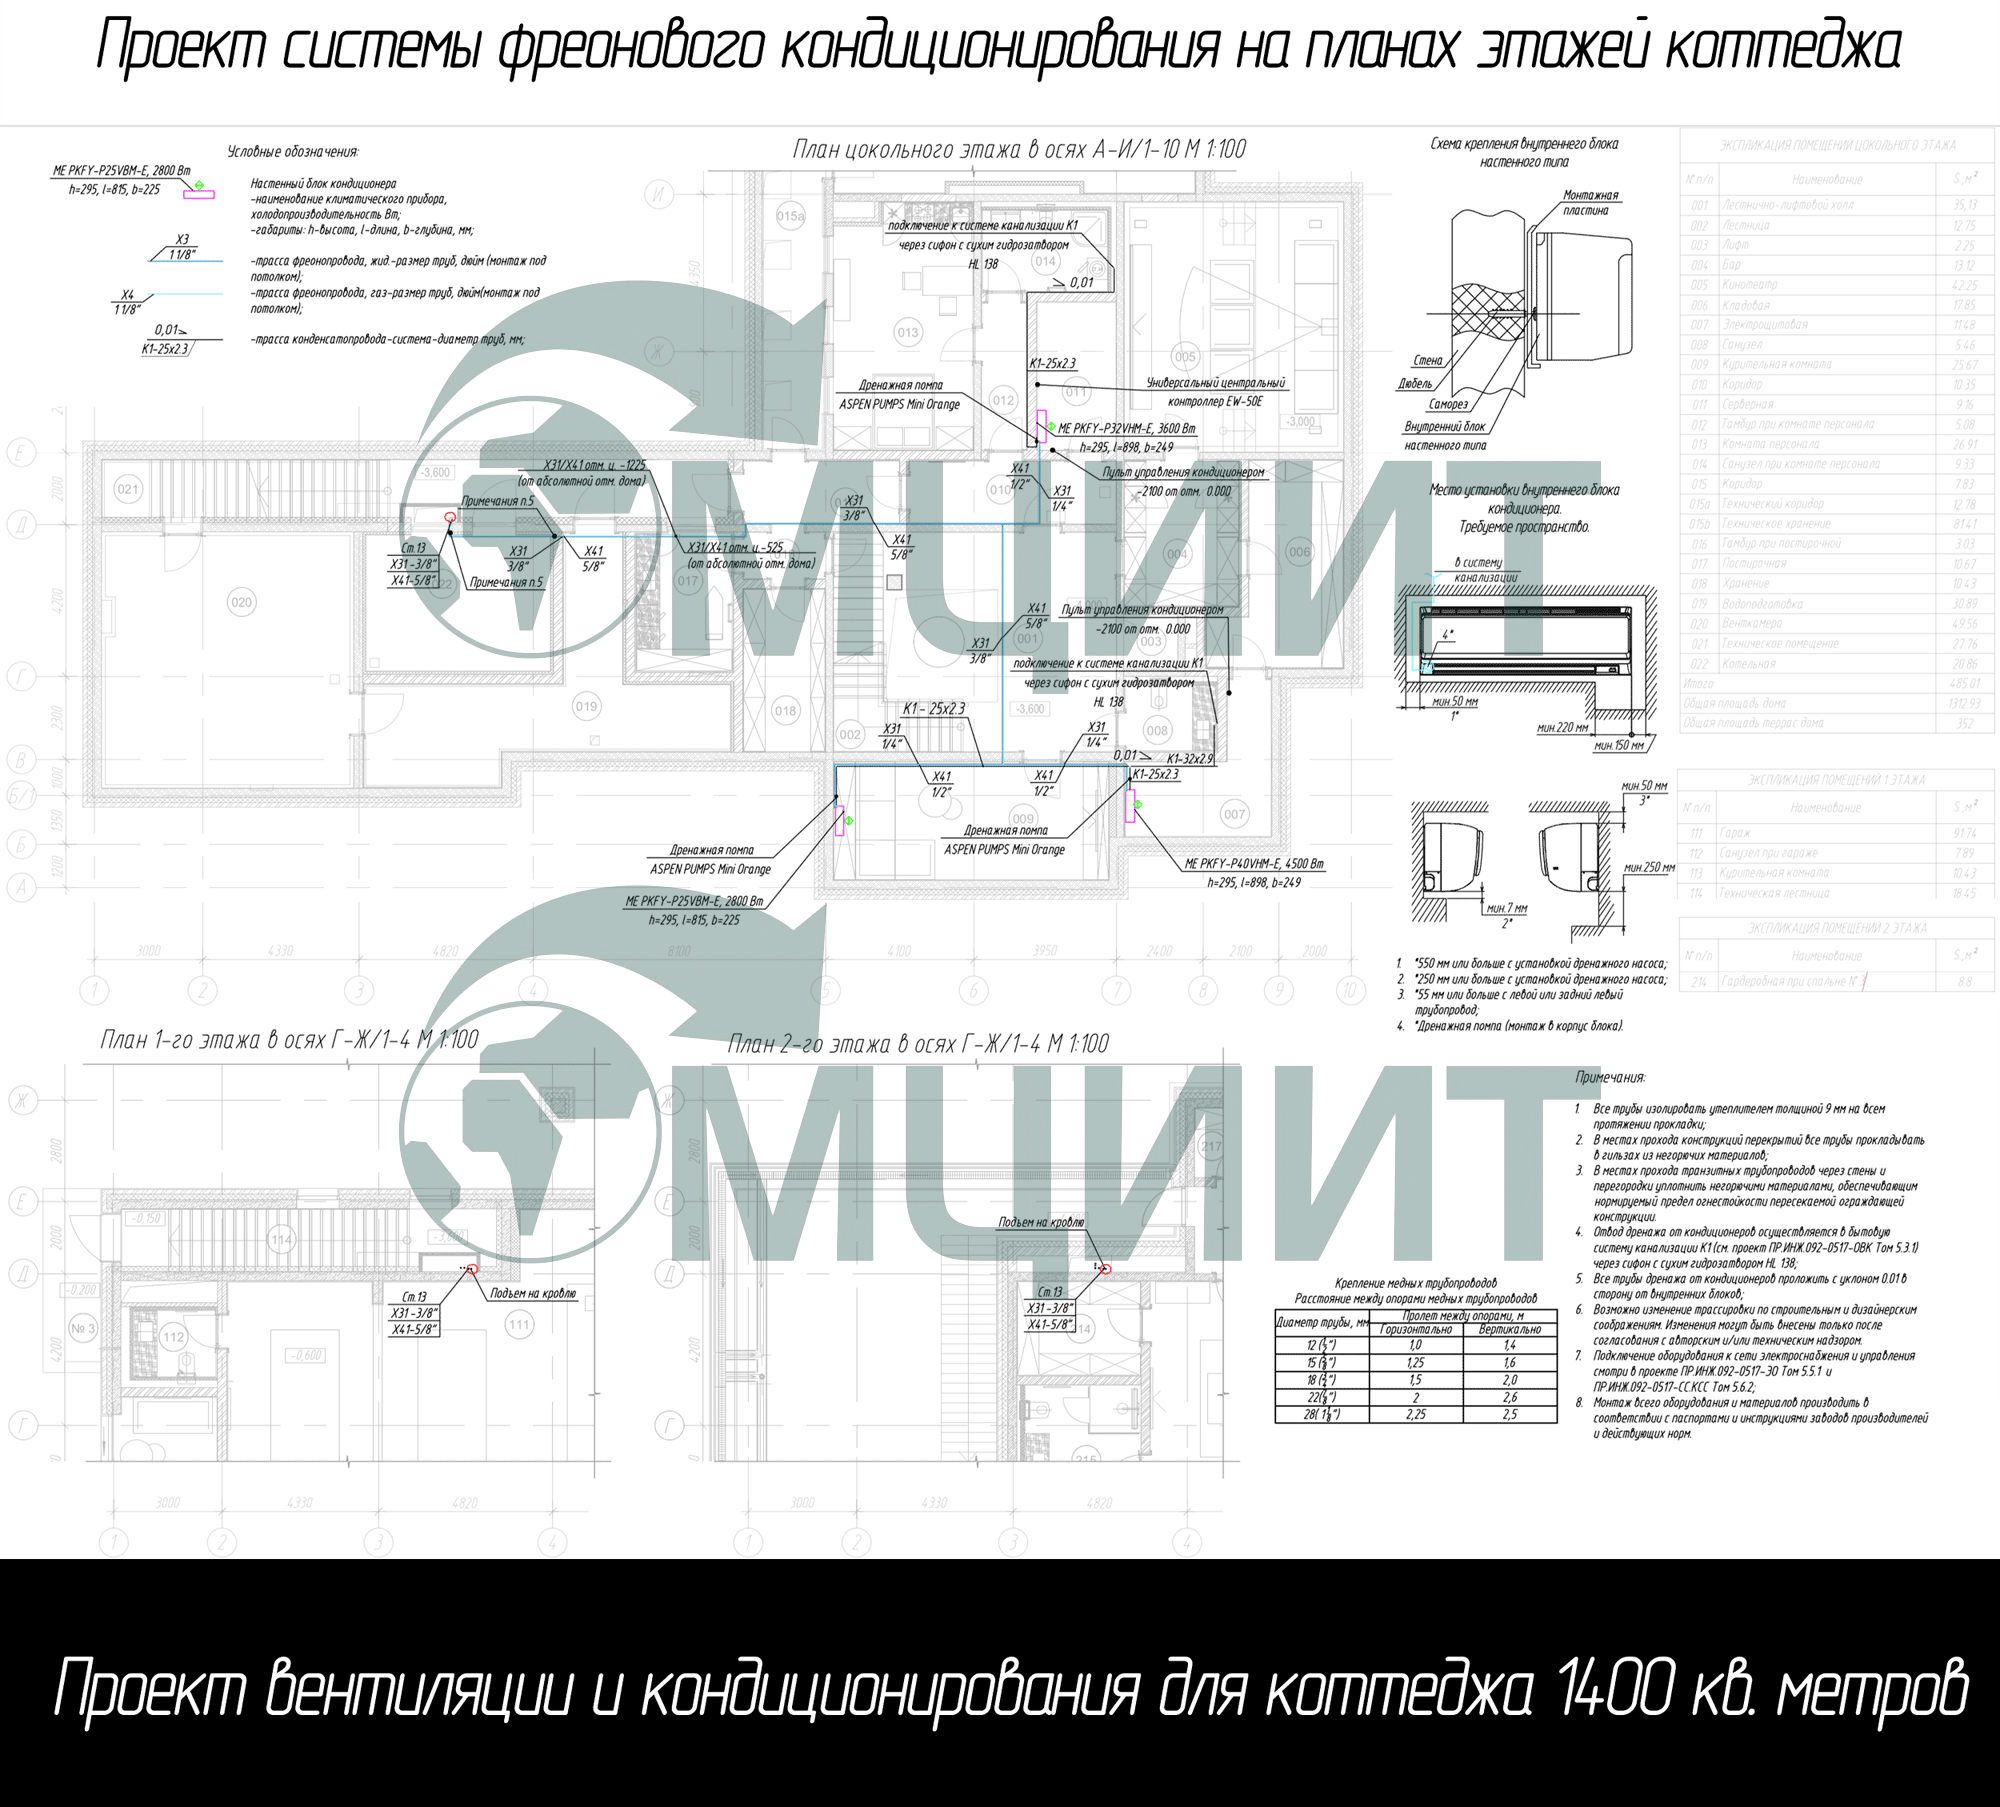 Проект кондиционирования коттеджа: схема системы фреонового кондиционирования на планах этажей коттеджа